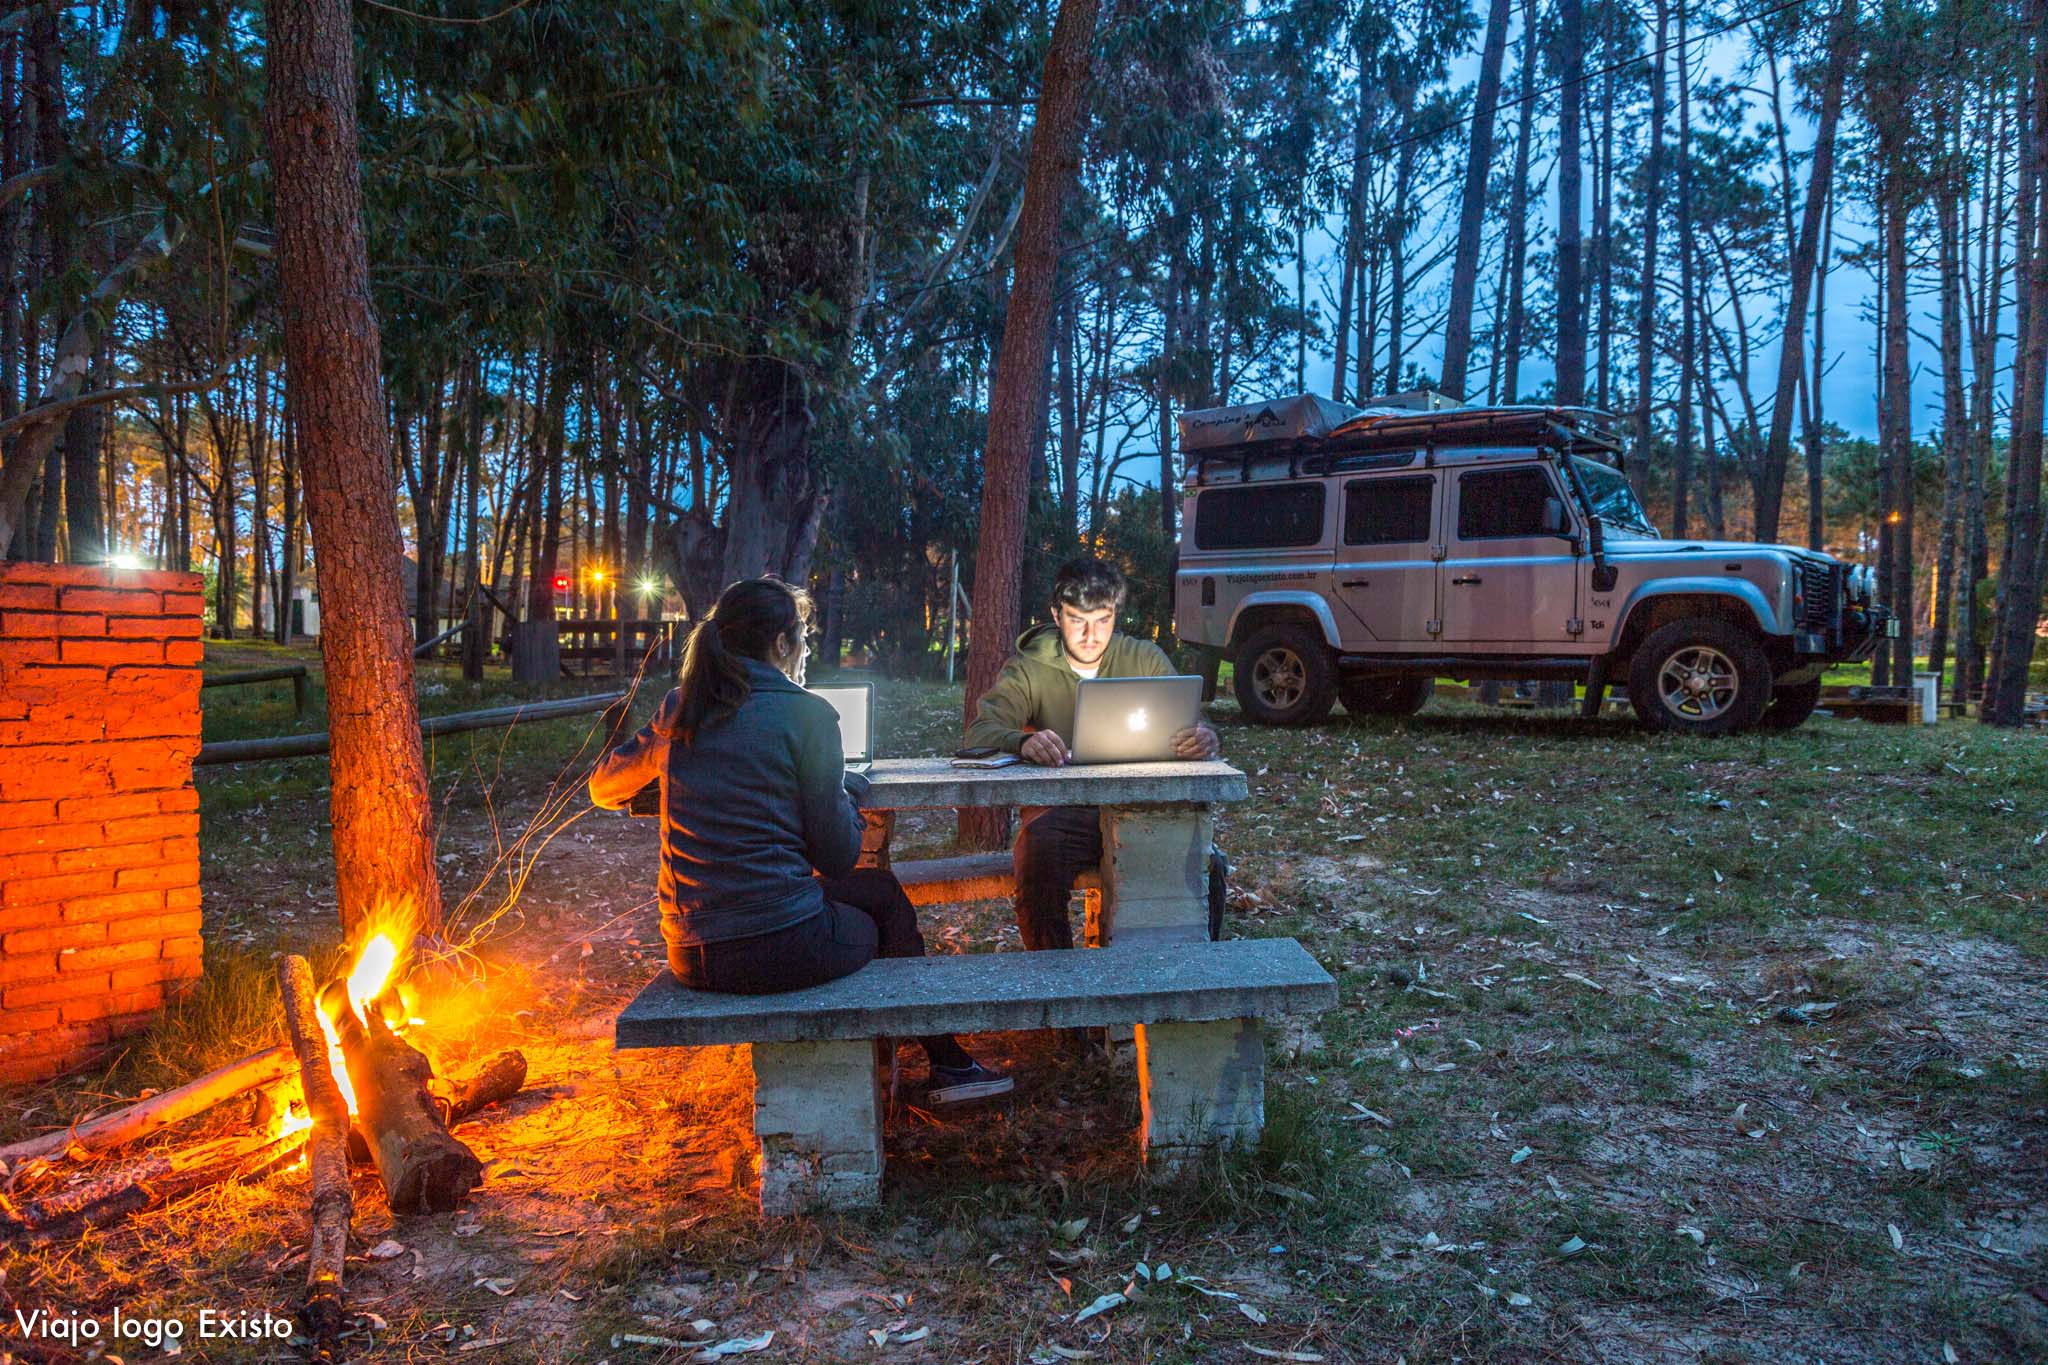 acampando no uruguai